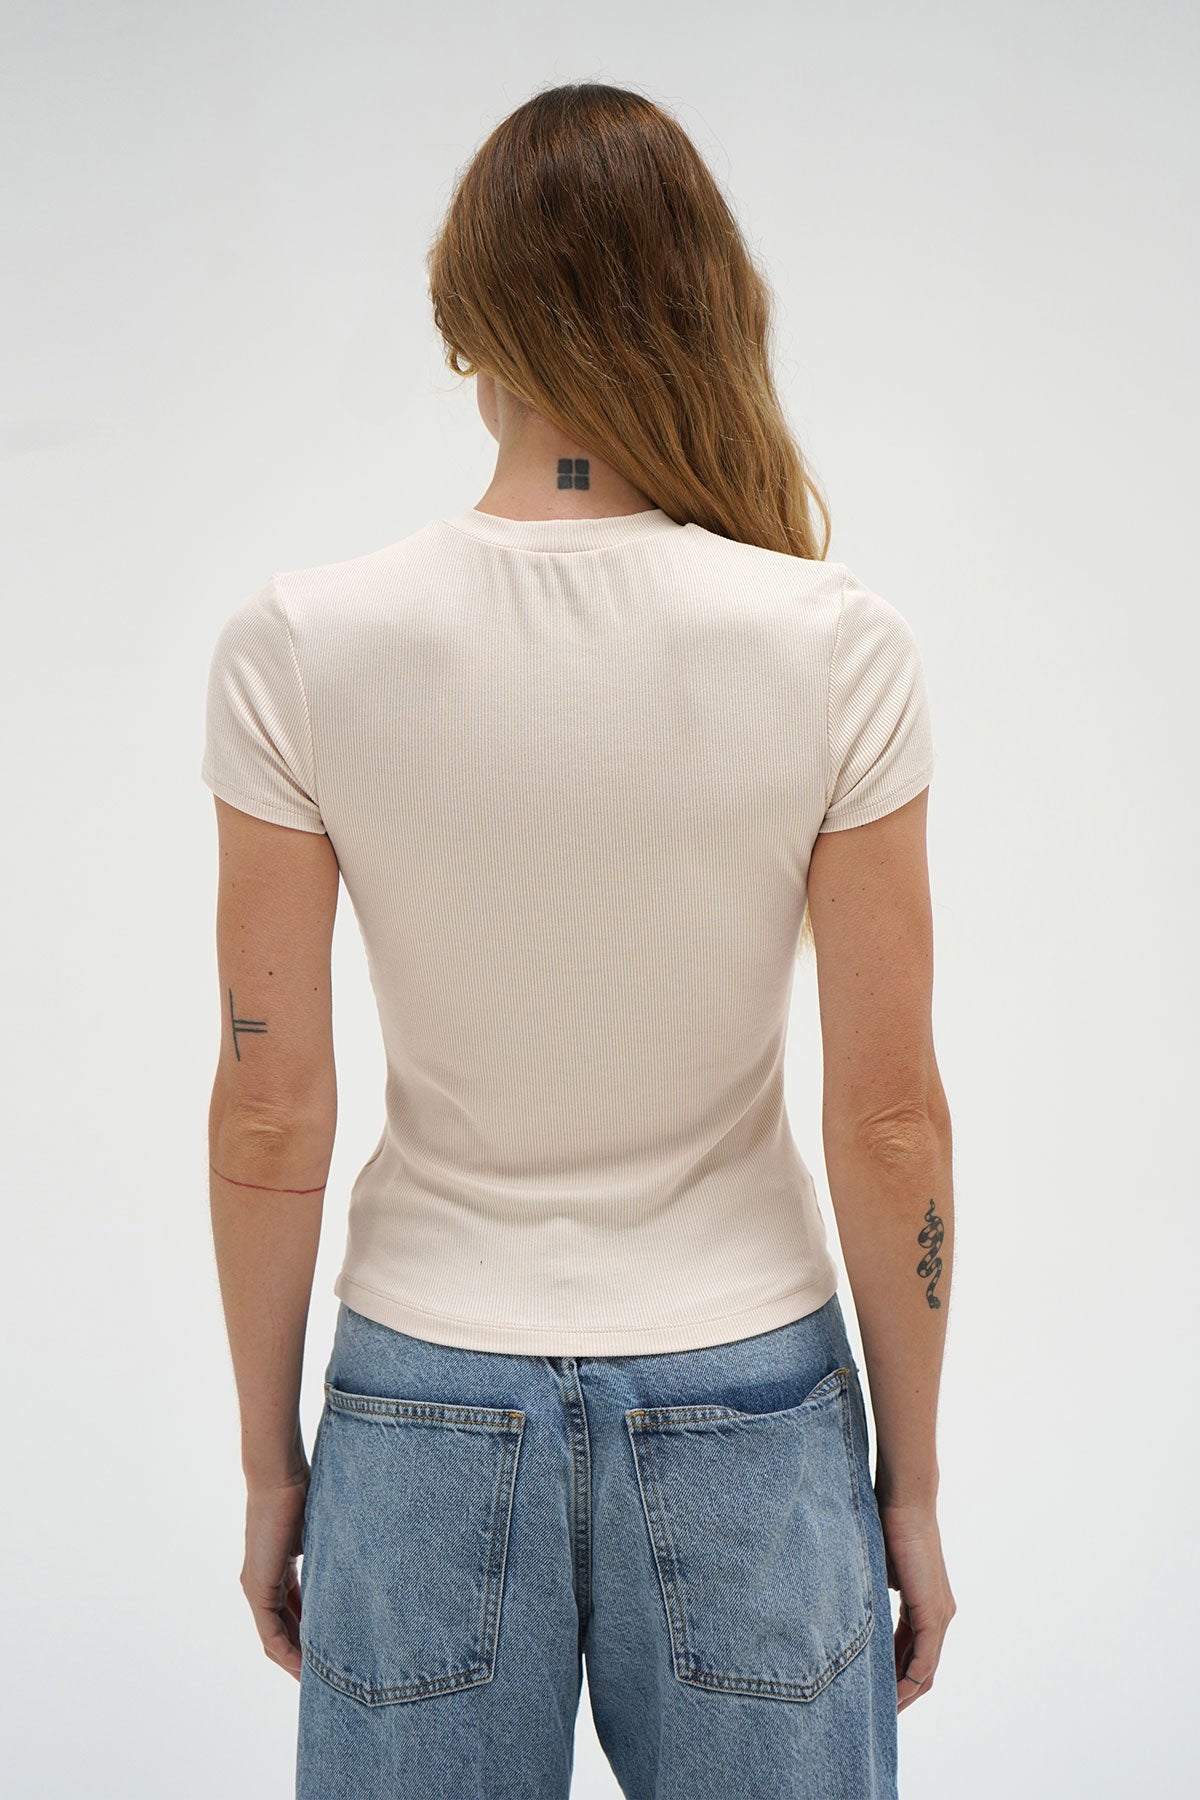 LNA Tailliertes Ripp-Rundhals-T-Shirt in Knochen